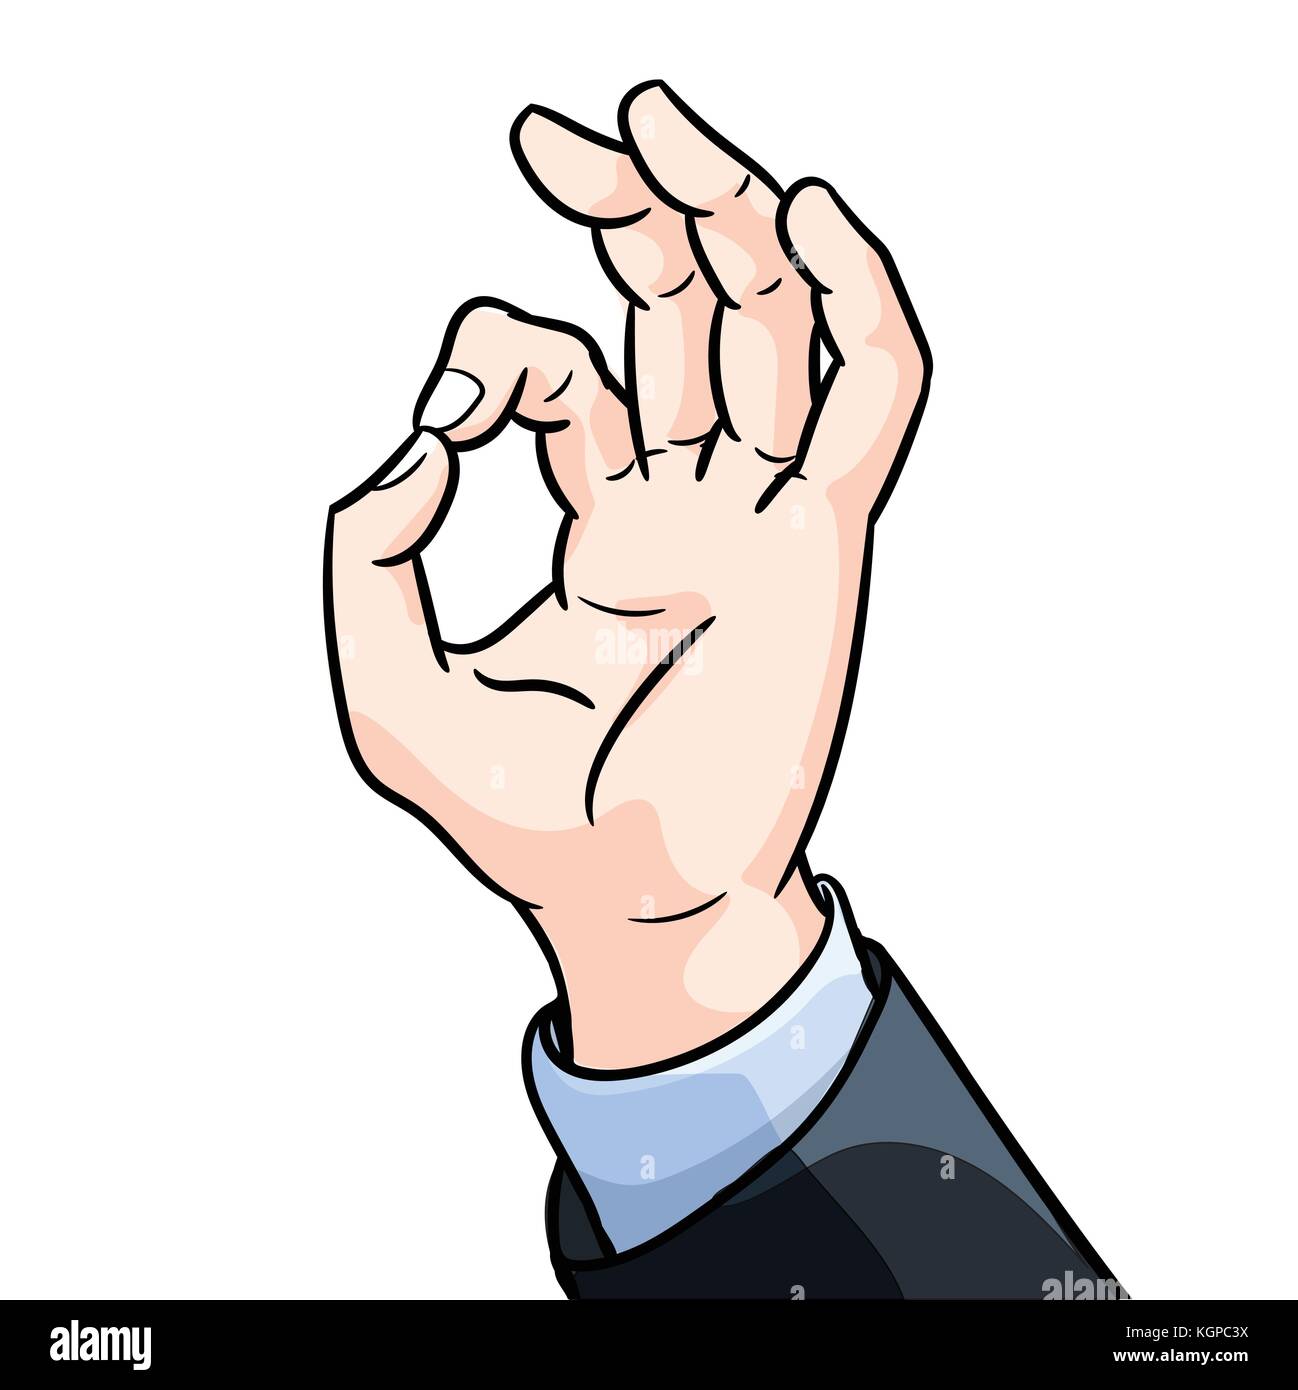 Abbildung: Geschäftsmann Geste okey, Hand ok angezeigt Geste Flat Style Vector Illustration auf weißem Hintergrund. Stock Vektor